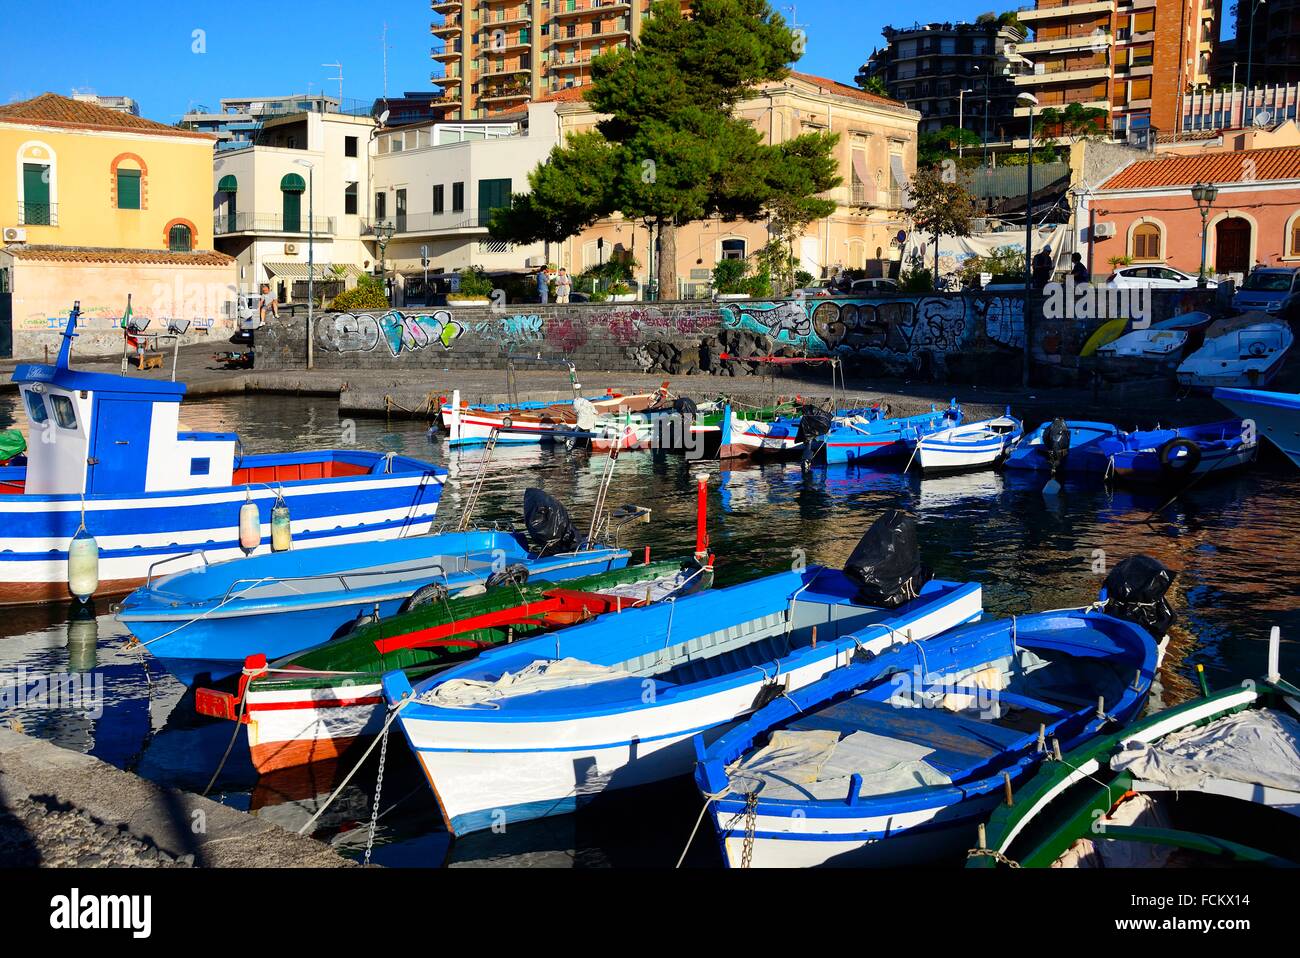 Aci Castello, Province of Catania, Sicily, Italy. Stock Photo